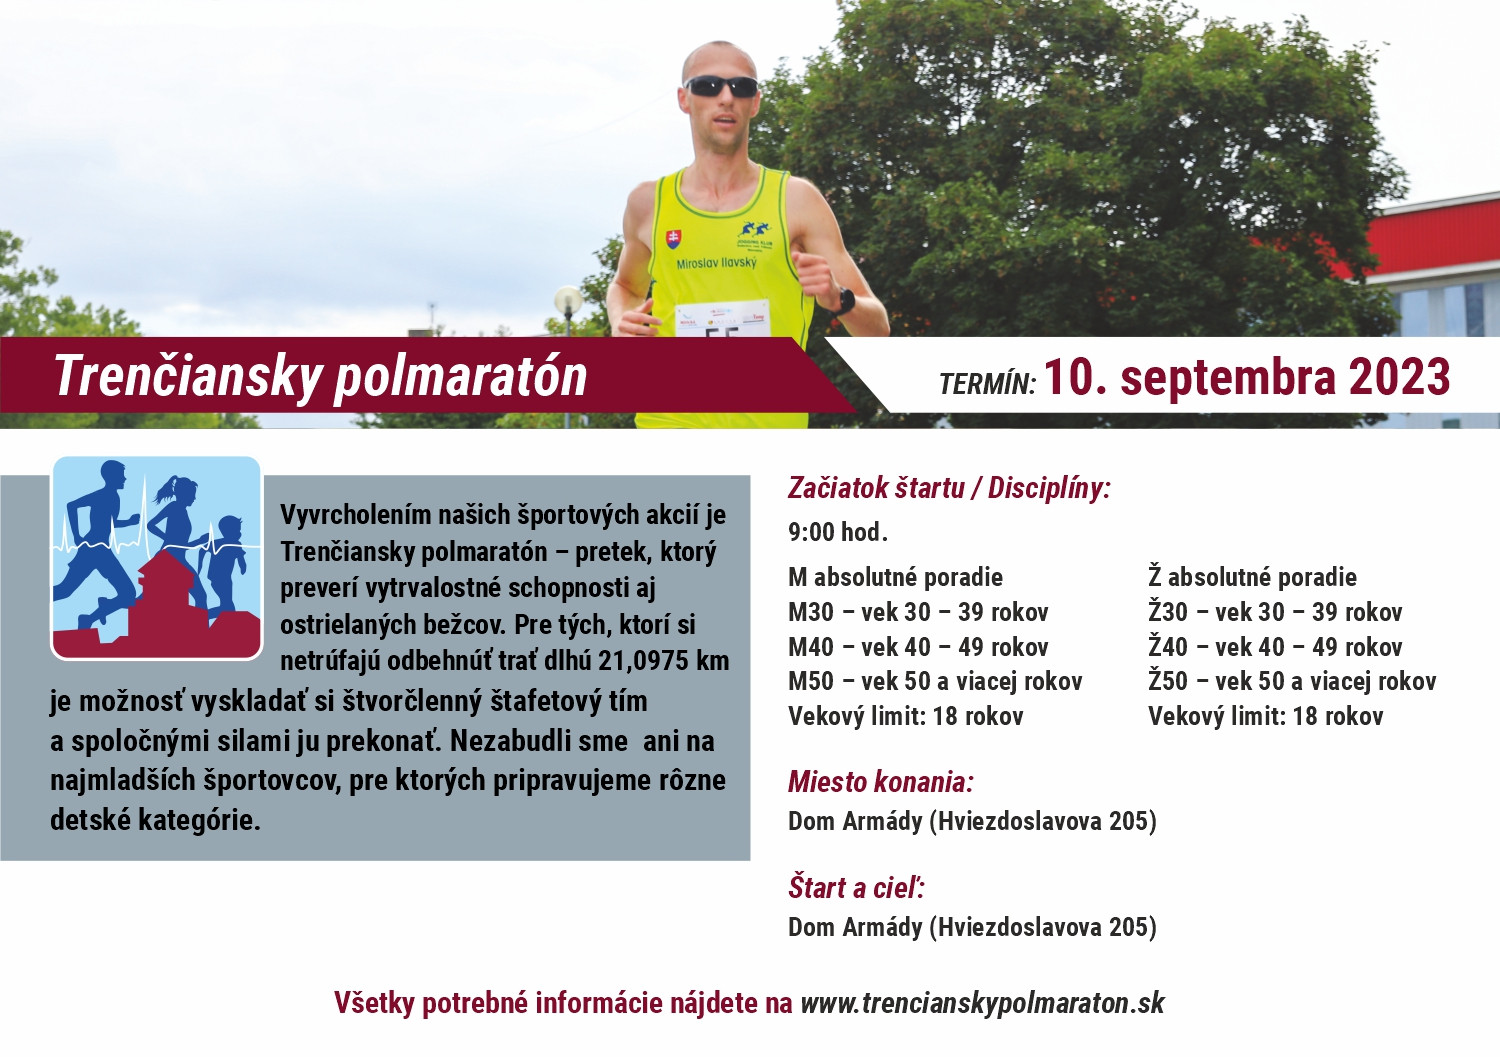 Polmaratón Trenčiansky polmaratón 2023